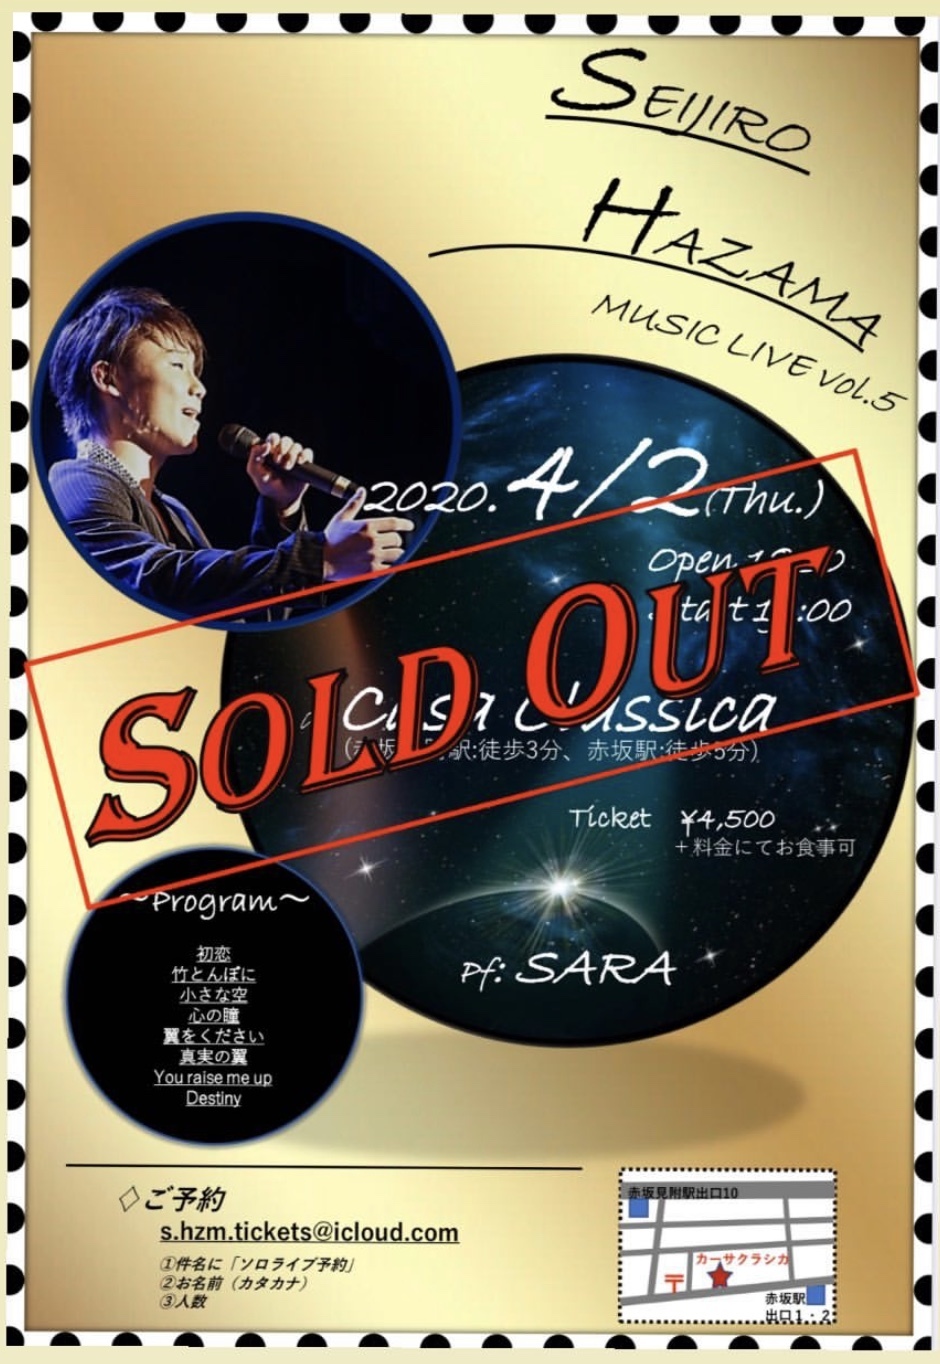 「Seijiro Hazama MUSIC LIVE vol.5」〜音楽のチカラで少しずつでも世の中を明るくして行きたい〜_a0157409_17224447.jpeg